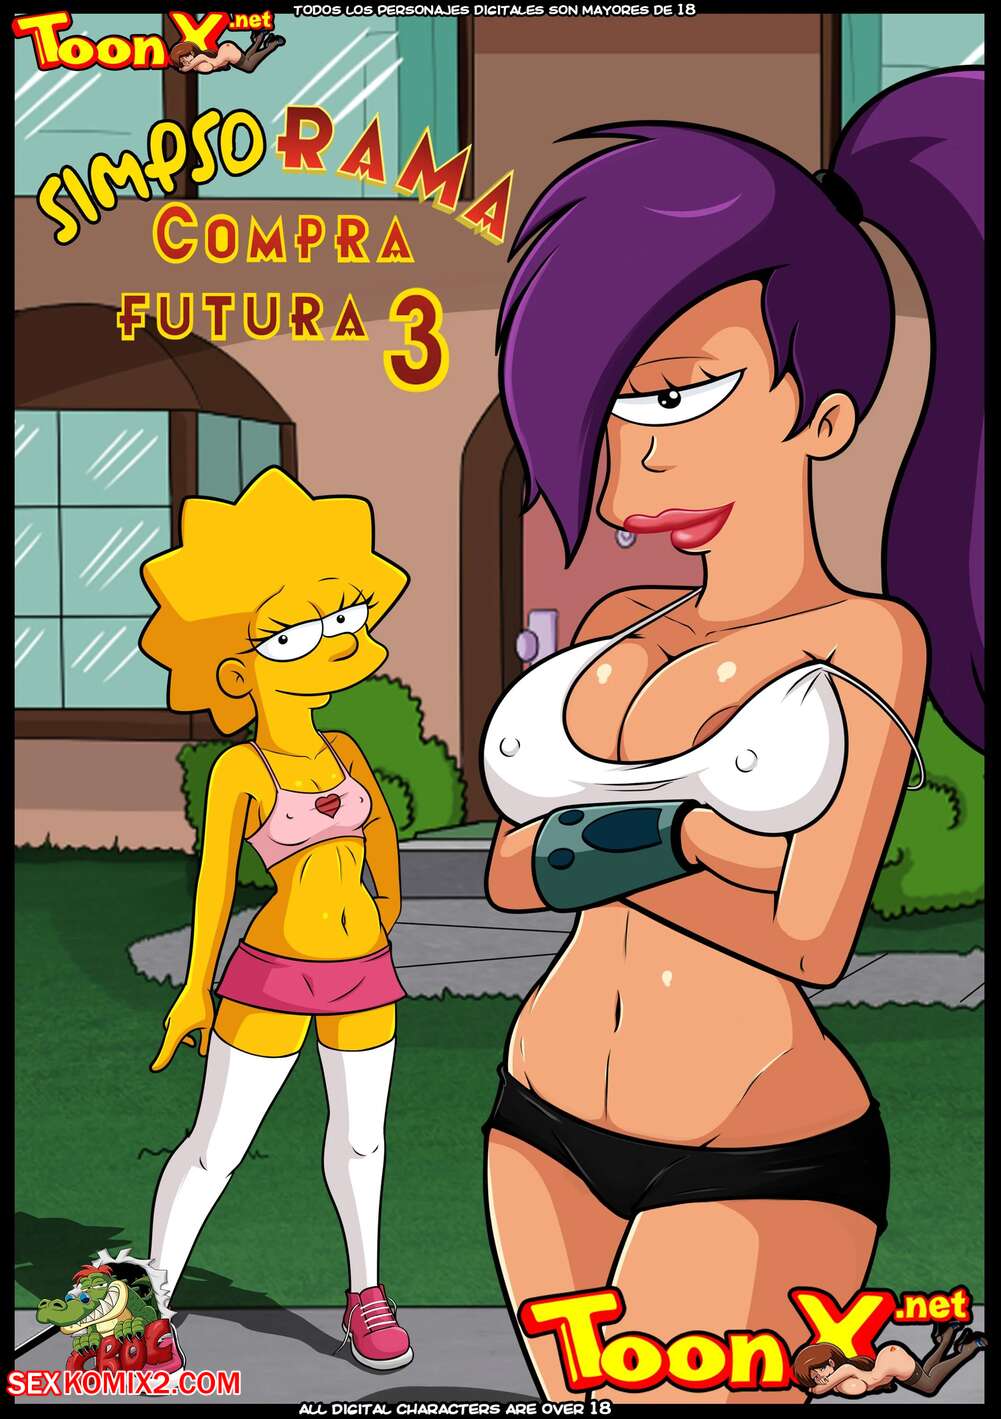 476 Nude Sex Cartoons - âœ…ï¸ Porn comic SimpsoRama. Chapter 3. The Simpsons , Futurama. Croc. Sex  comic beauty woke up | Porn comics in English for adults only |  sexkomix2.com